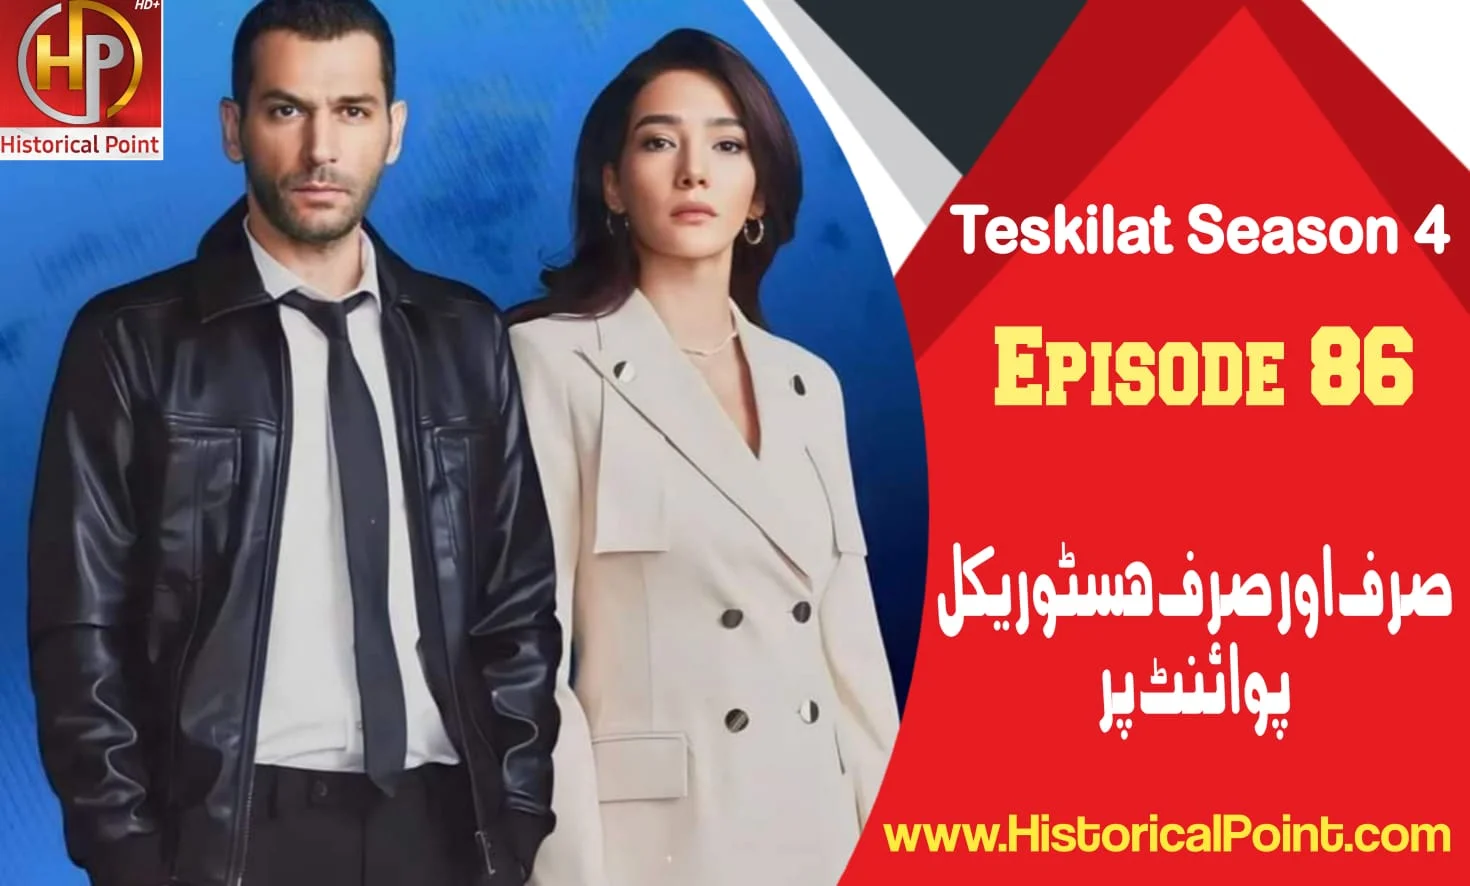 Teskilat Episode 86 With Urdu Subtitles